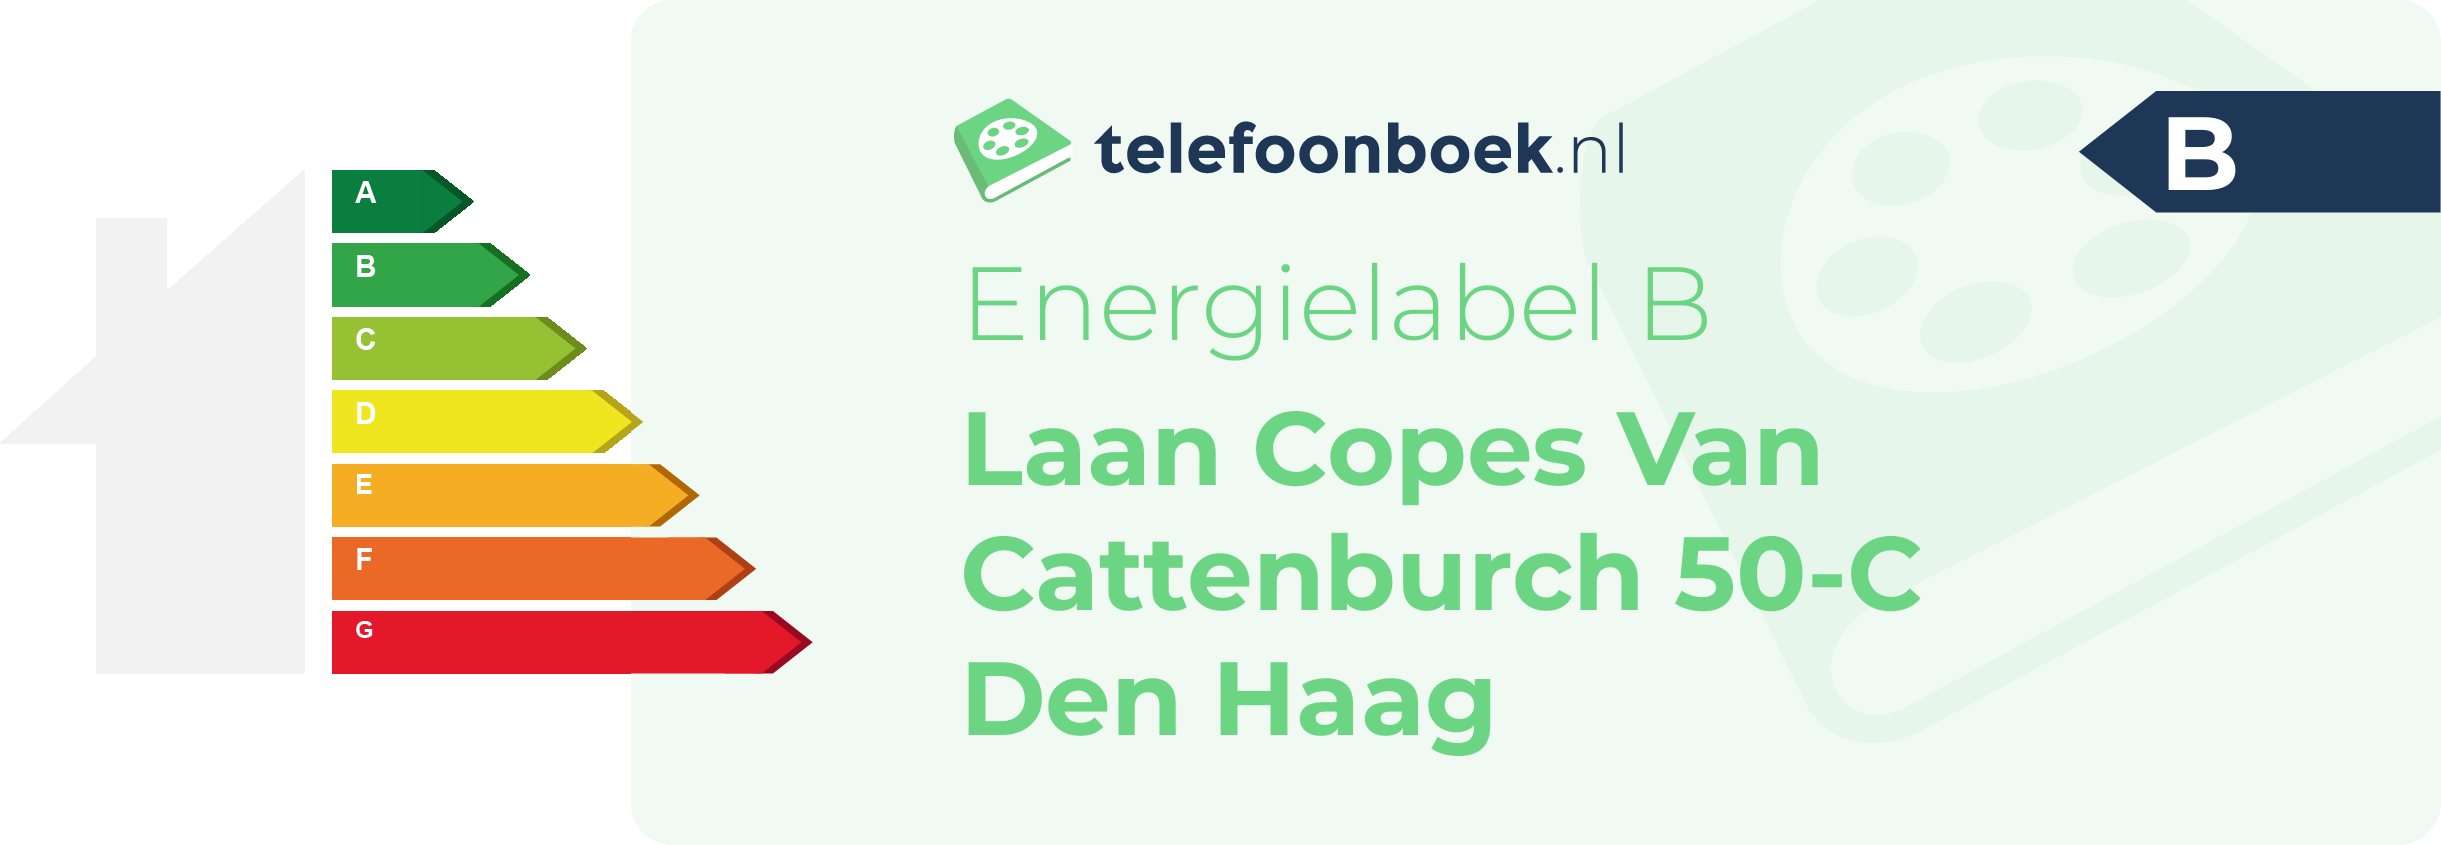 Energielabel Laan Copes Van Cattenburch 50-C Den Haag